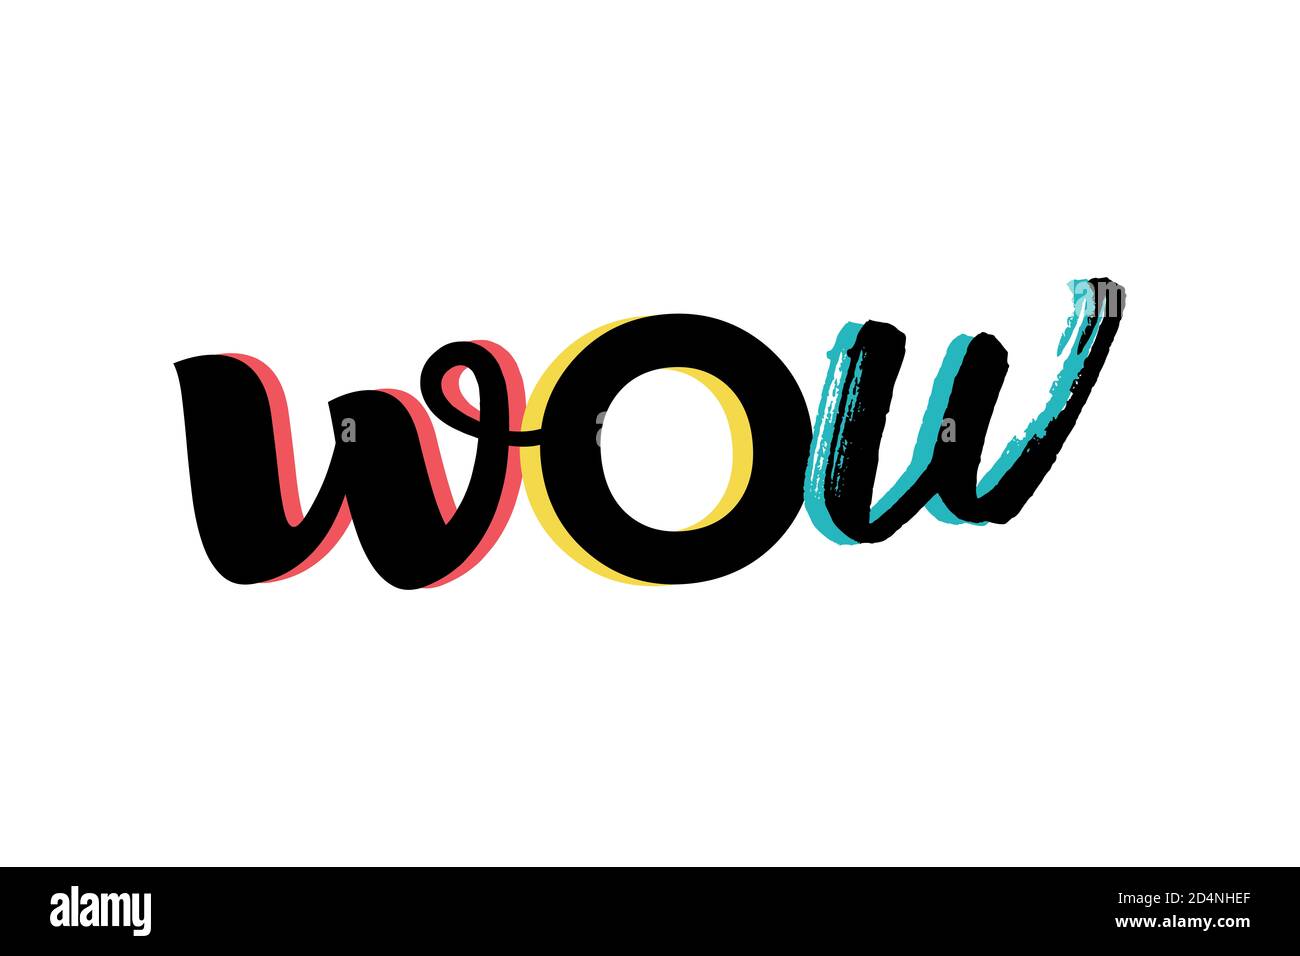 Design grafico moderno, vivace e audace di una parola "WOW" nei colori rosso, giallo e blu. Tipografia scritta a mano con tratto di pennello. Foto Stock